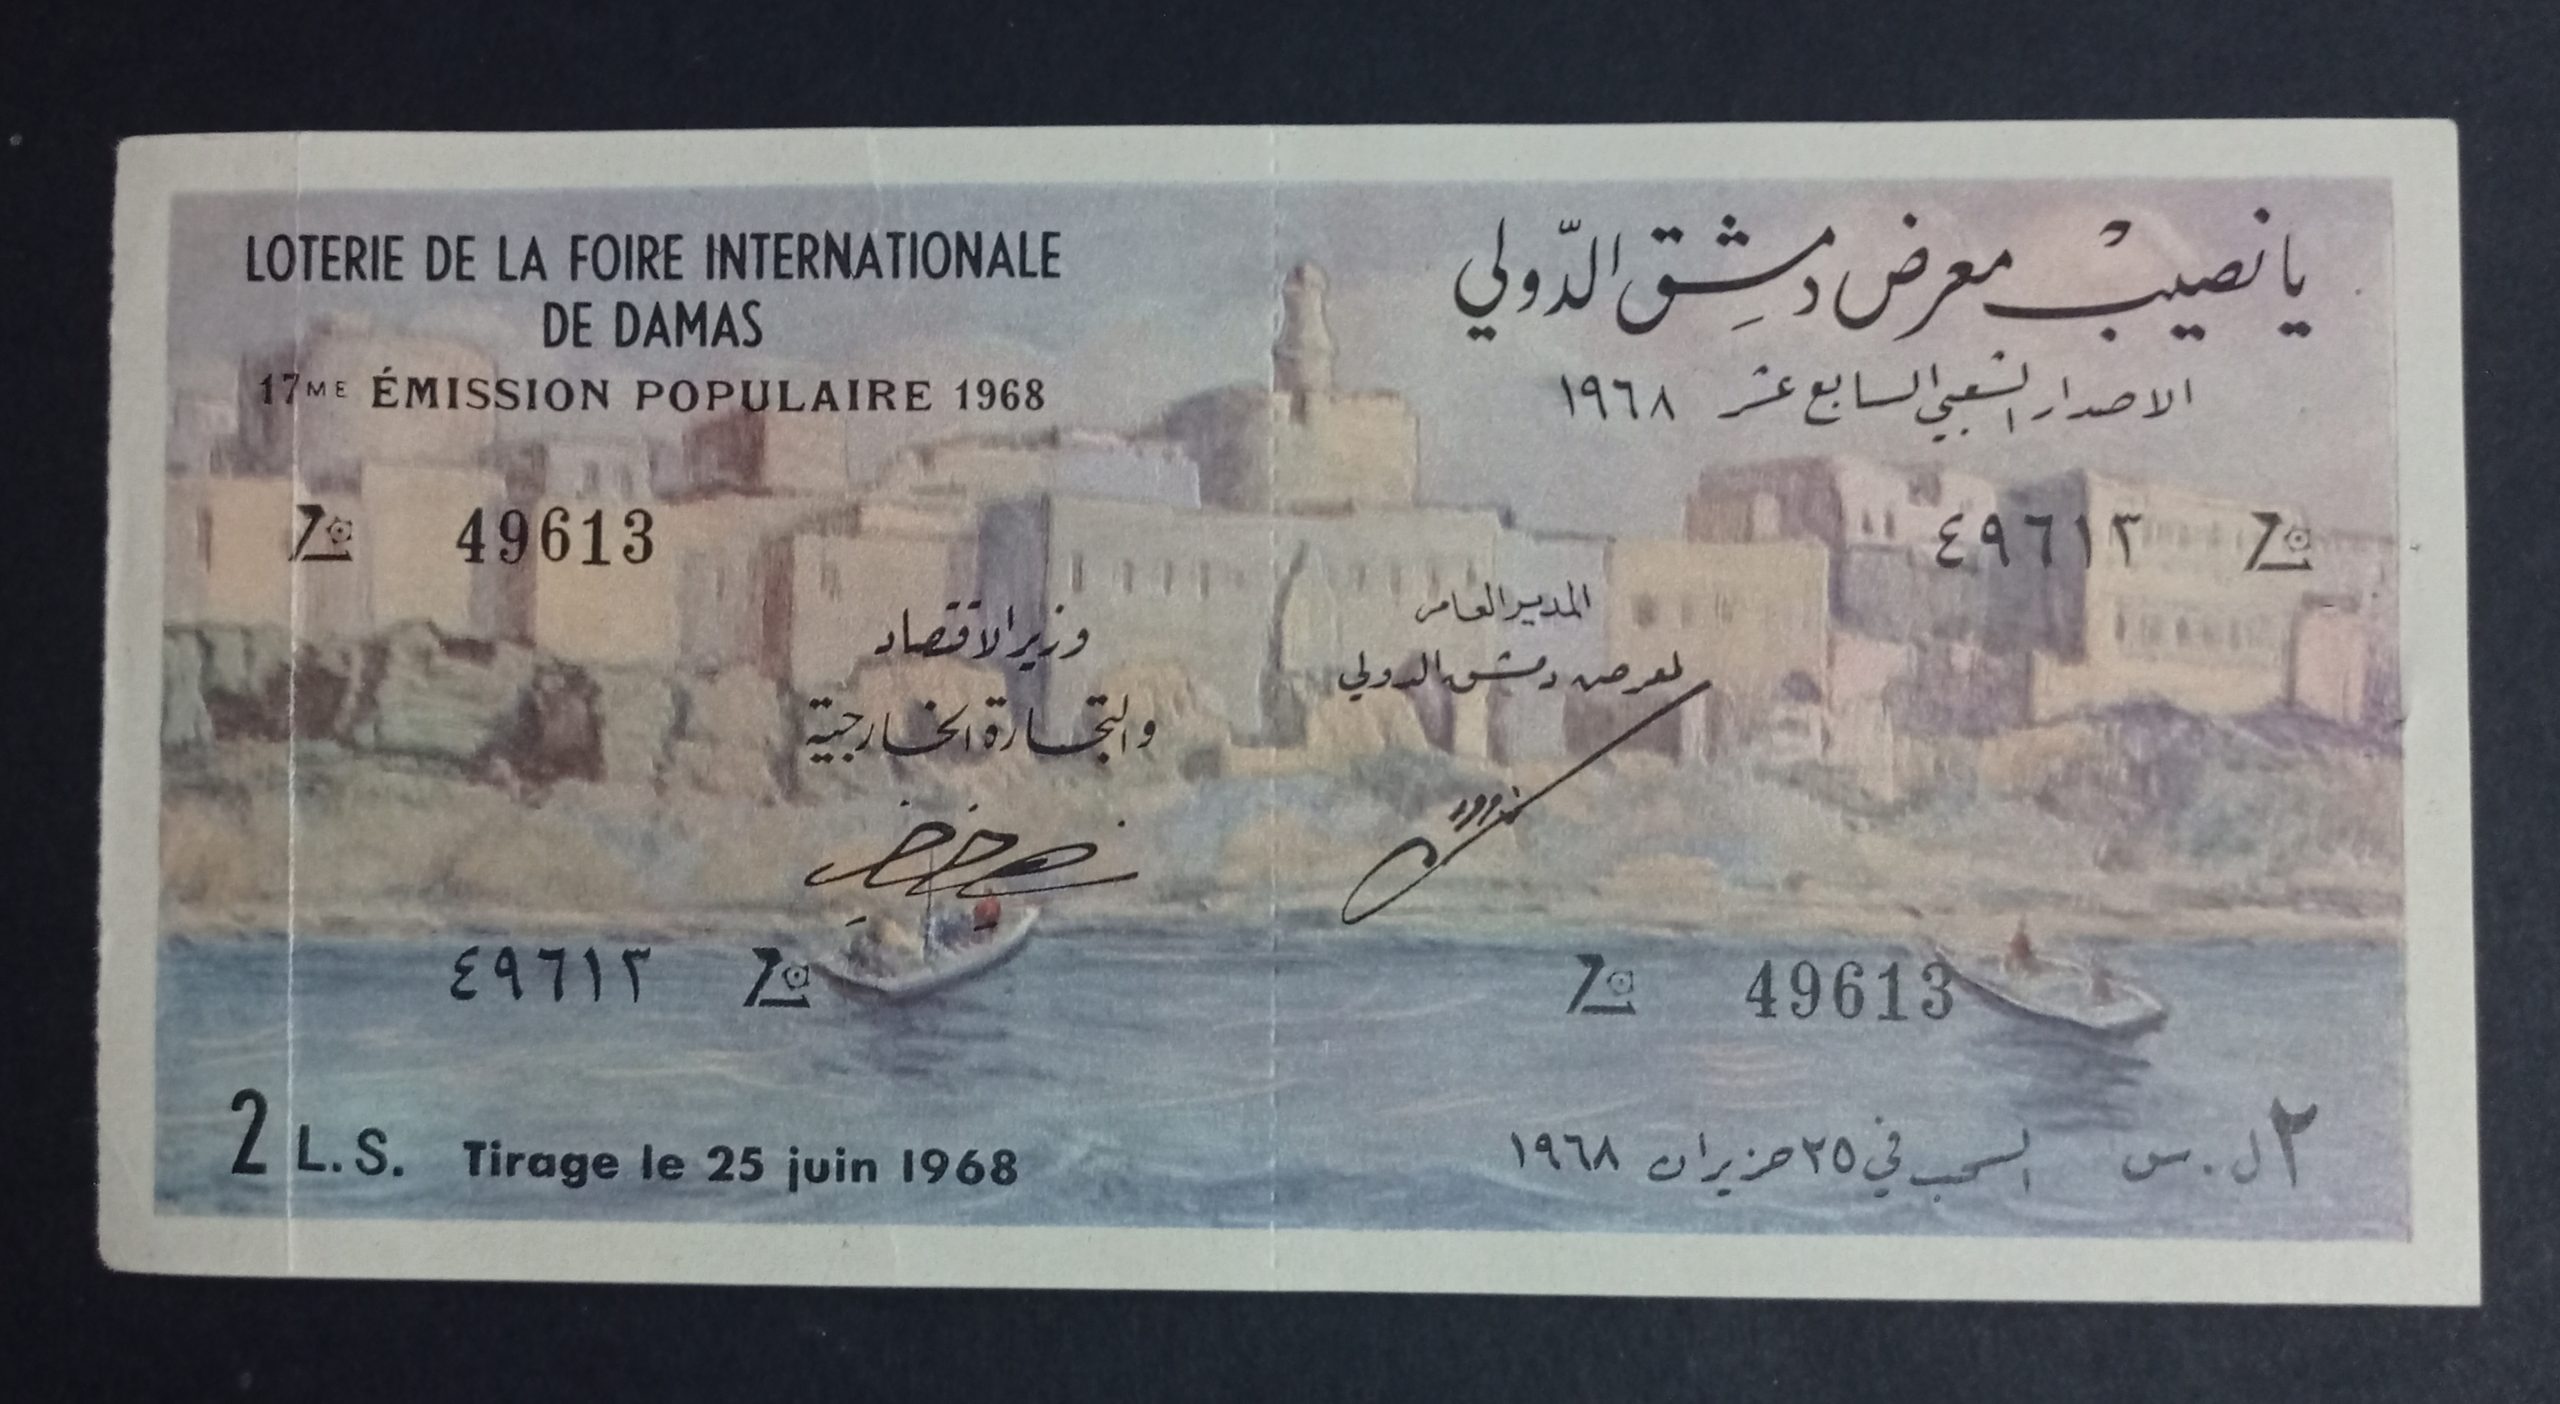 التاريخ السوري المعاصر - يانصيب معرض دمشق الدولي - الإصدار الشعبي السابع عشر عام 1968